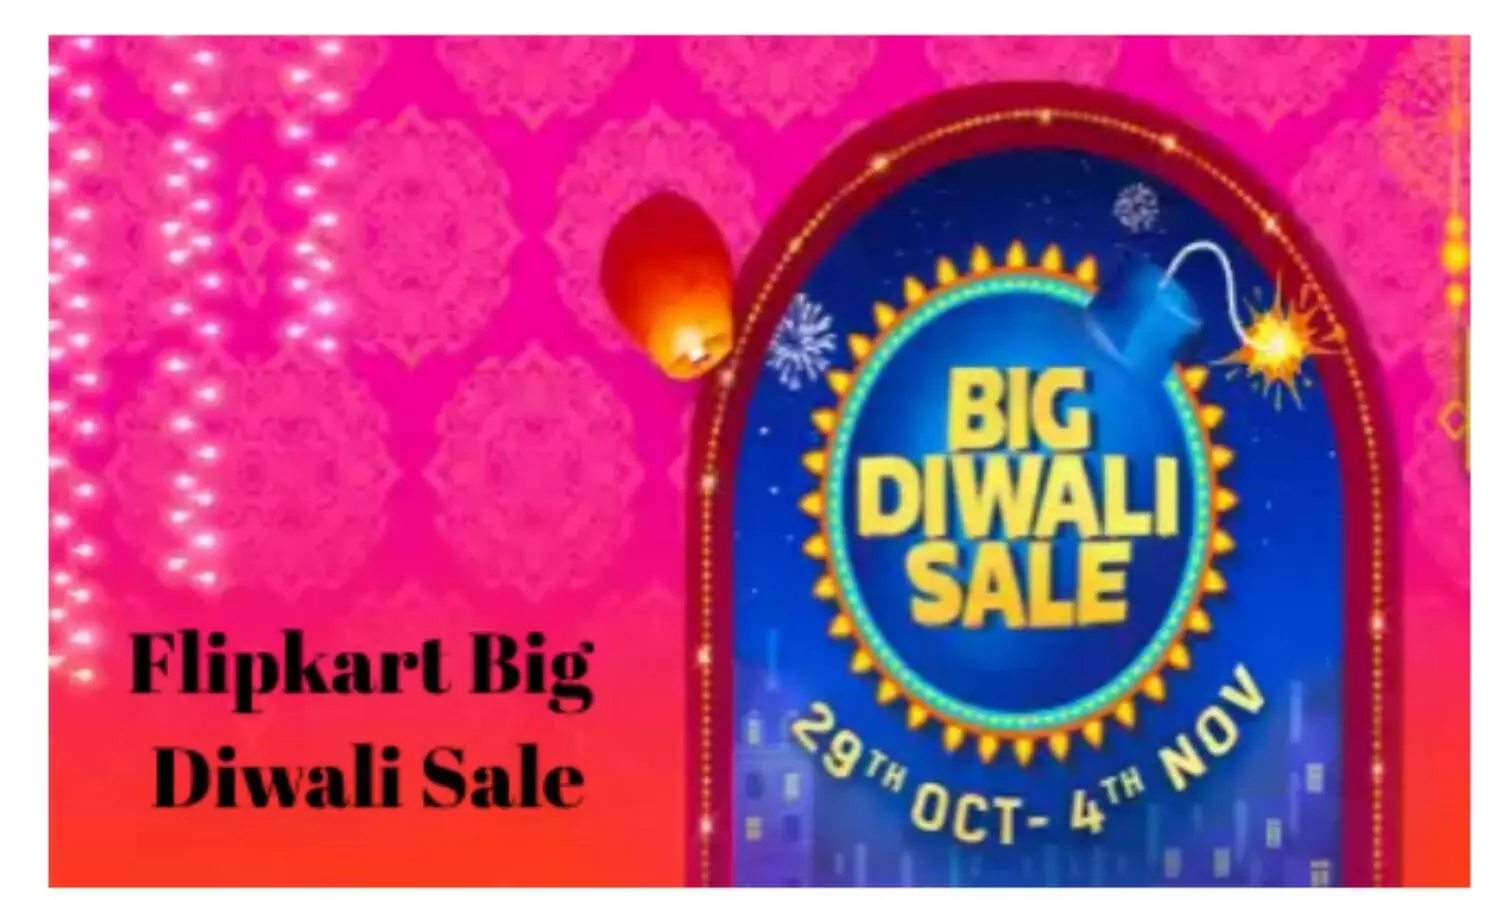 Flipkart Big Diwali Sale Offer